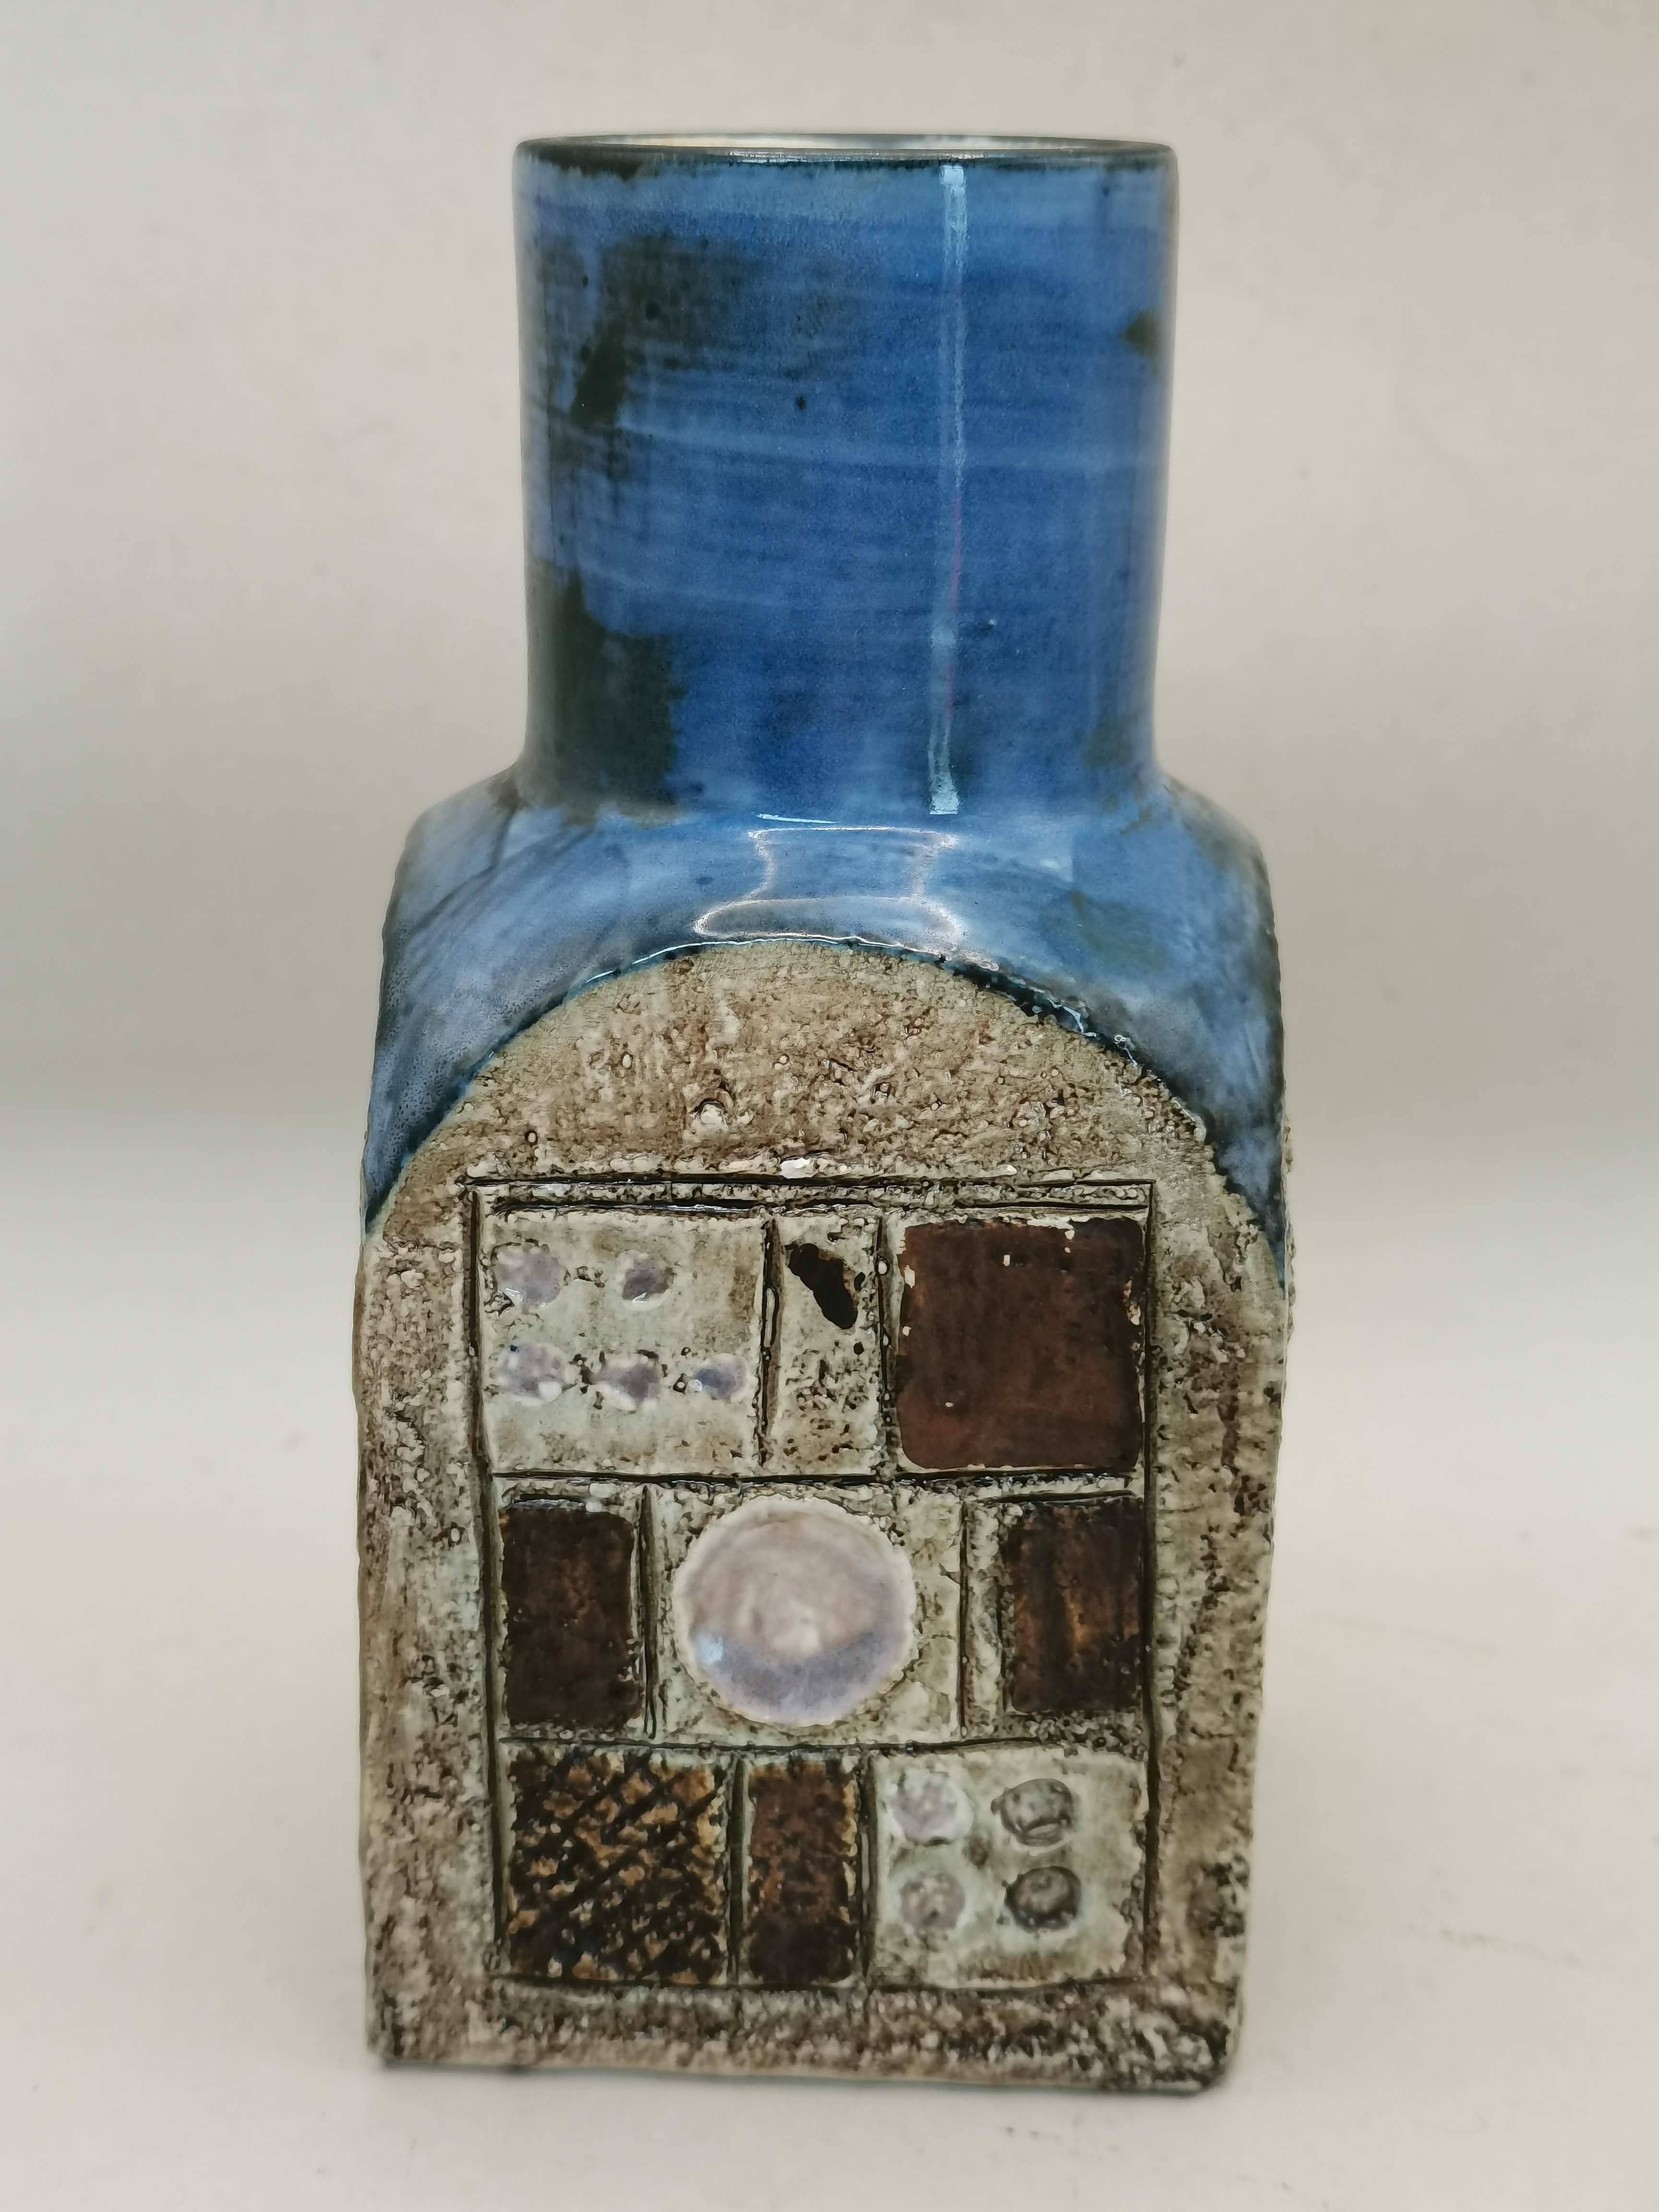 Troika Vase by Avril Bennett 1972 - 1979 - Image 3 of 5